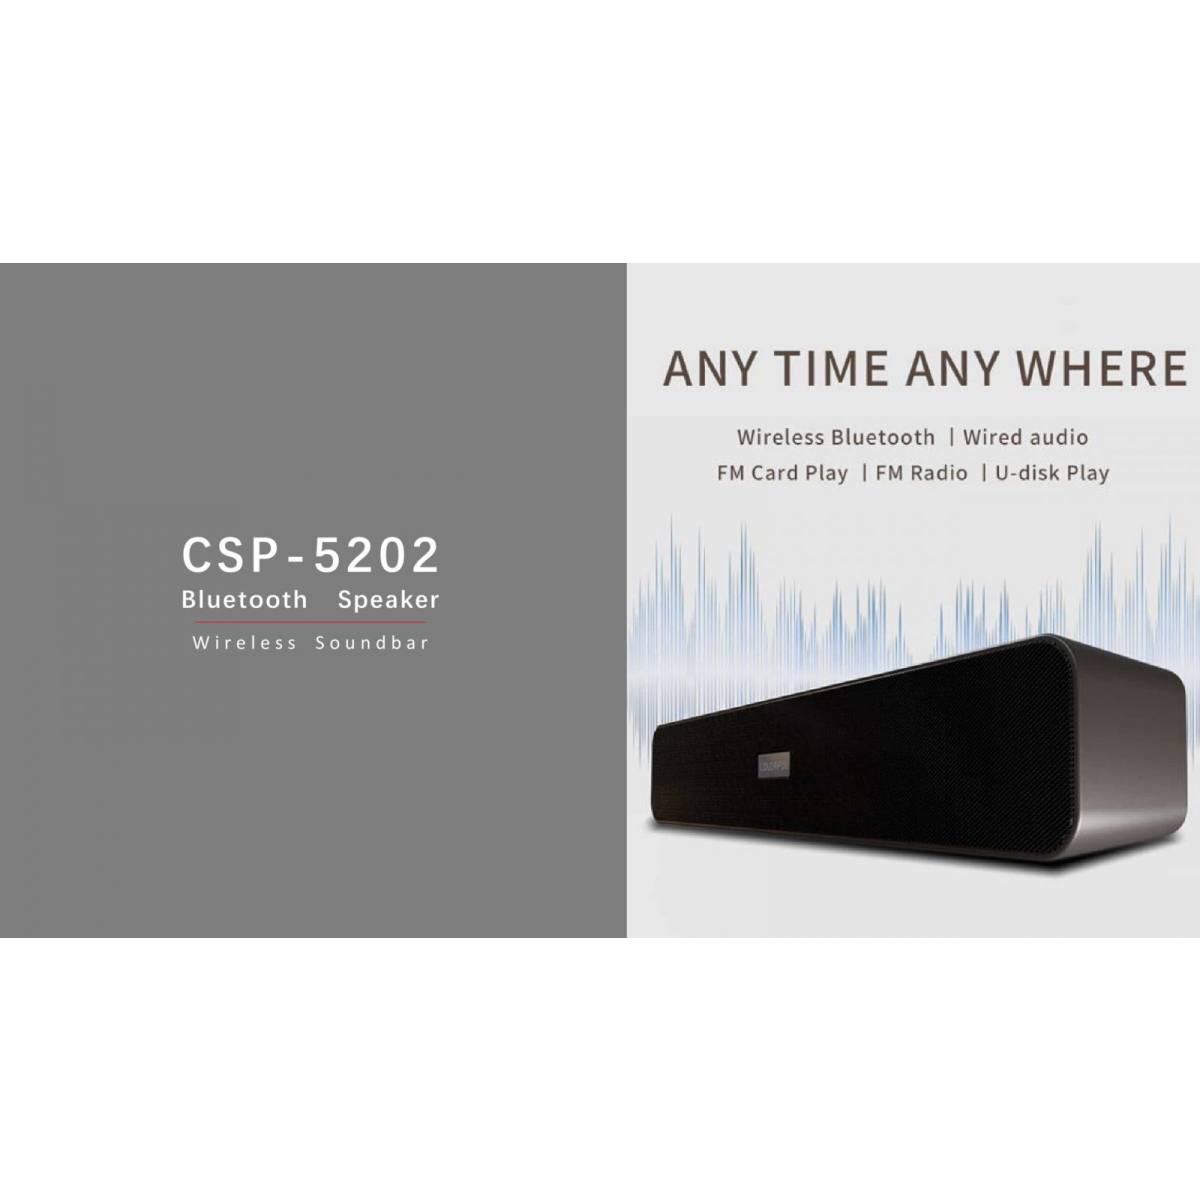 Loa Colorful Soundbar Speaker 5202 Bluetooth - Hàng chính hãng